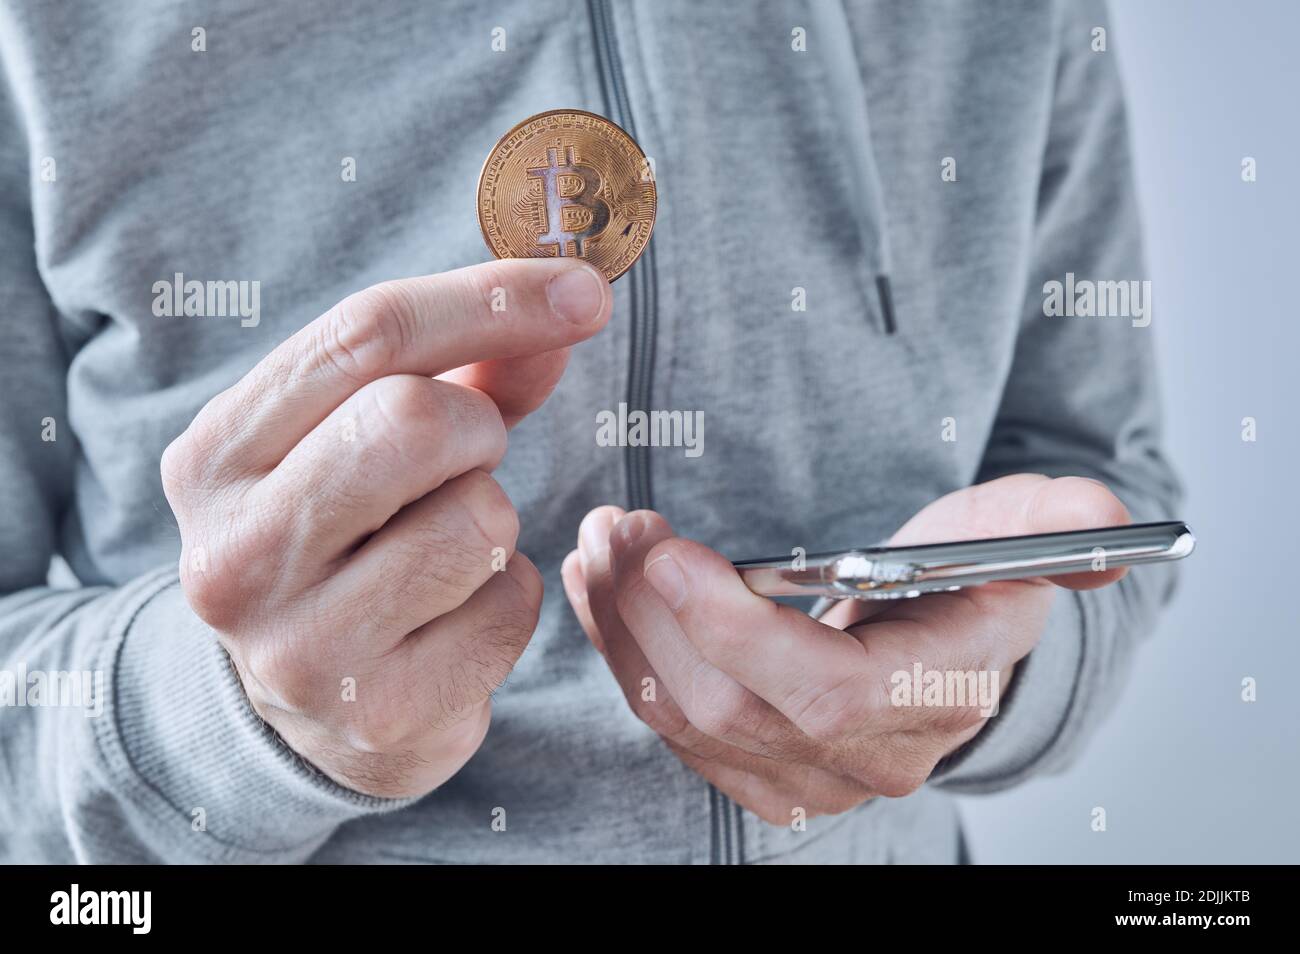 Bitcoin Trading App für Smartphones, konzeptionelles Bild, Mann hält Kryptowährung Münze und Handy in Händen. Stockfoto